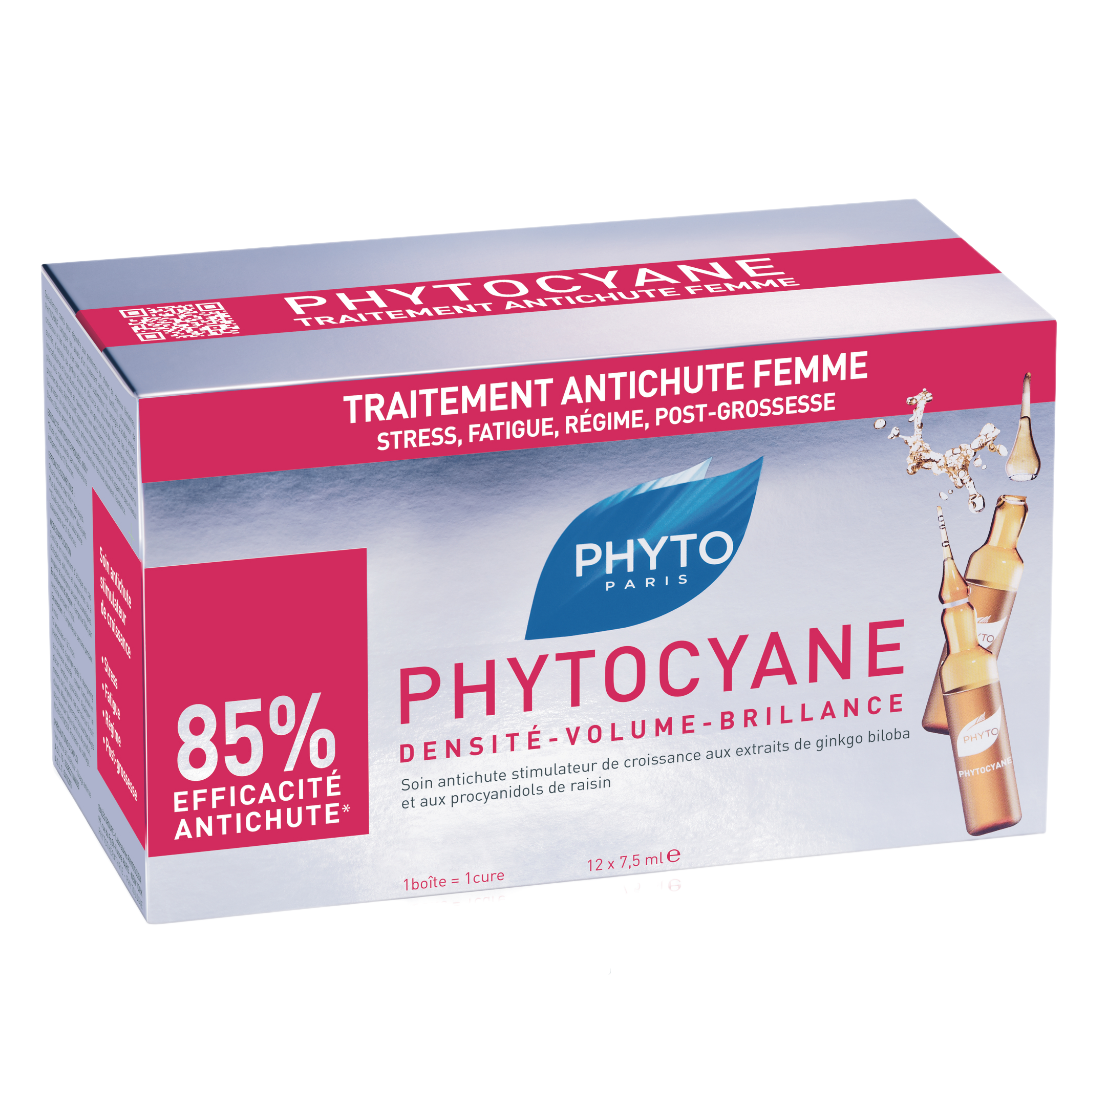 Средство против выпадения волос Phyto Phytocyane, 12 шт. по 7,5 мл (Р1110) - фото 2